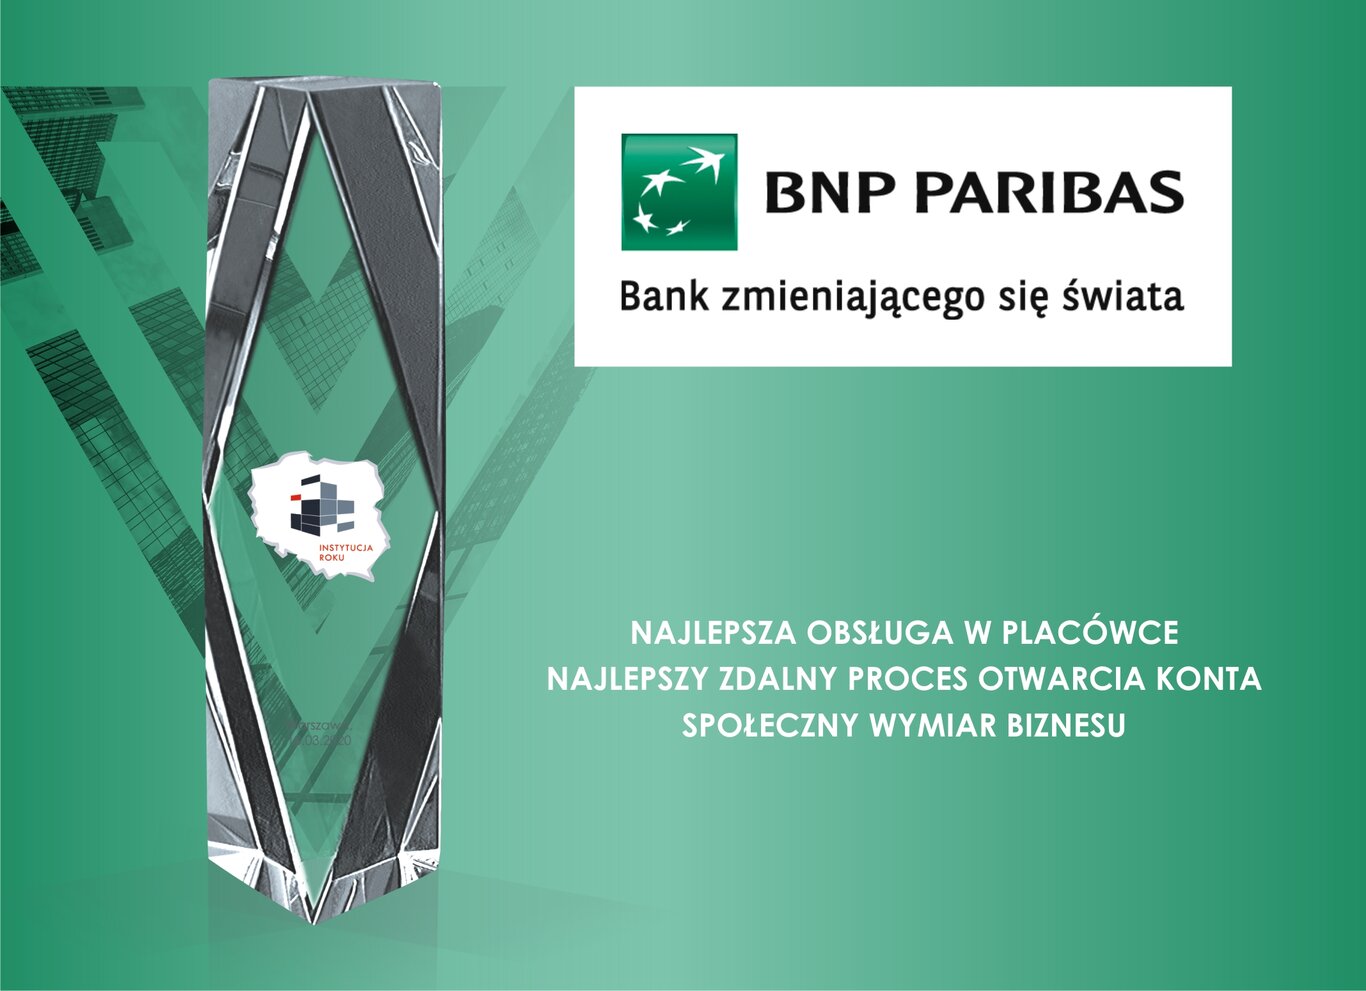 Bank BNP Paribas Instytucją Roku 2019